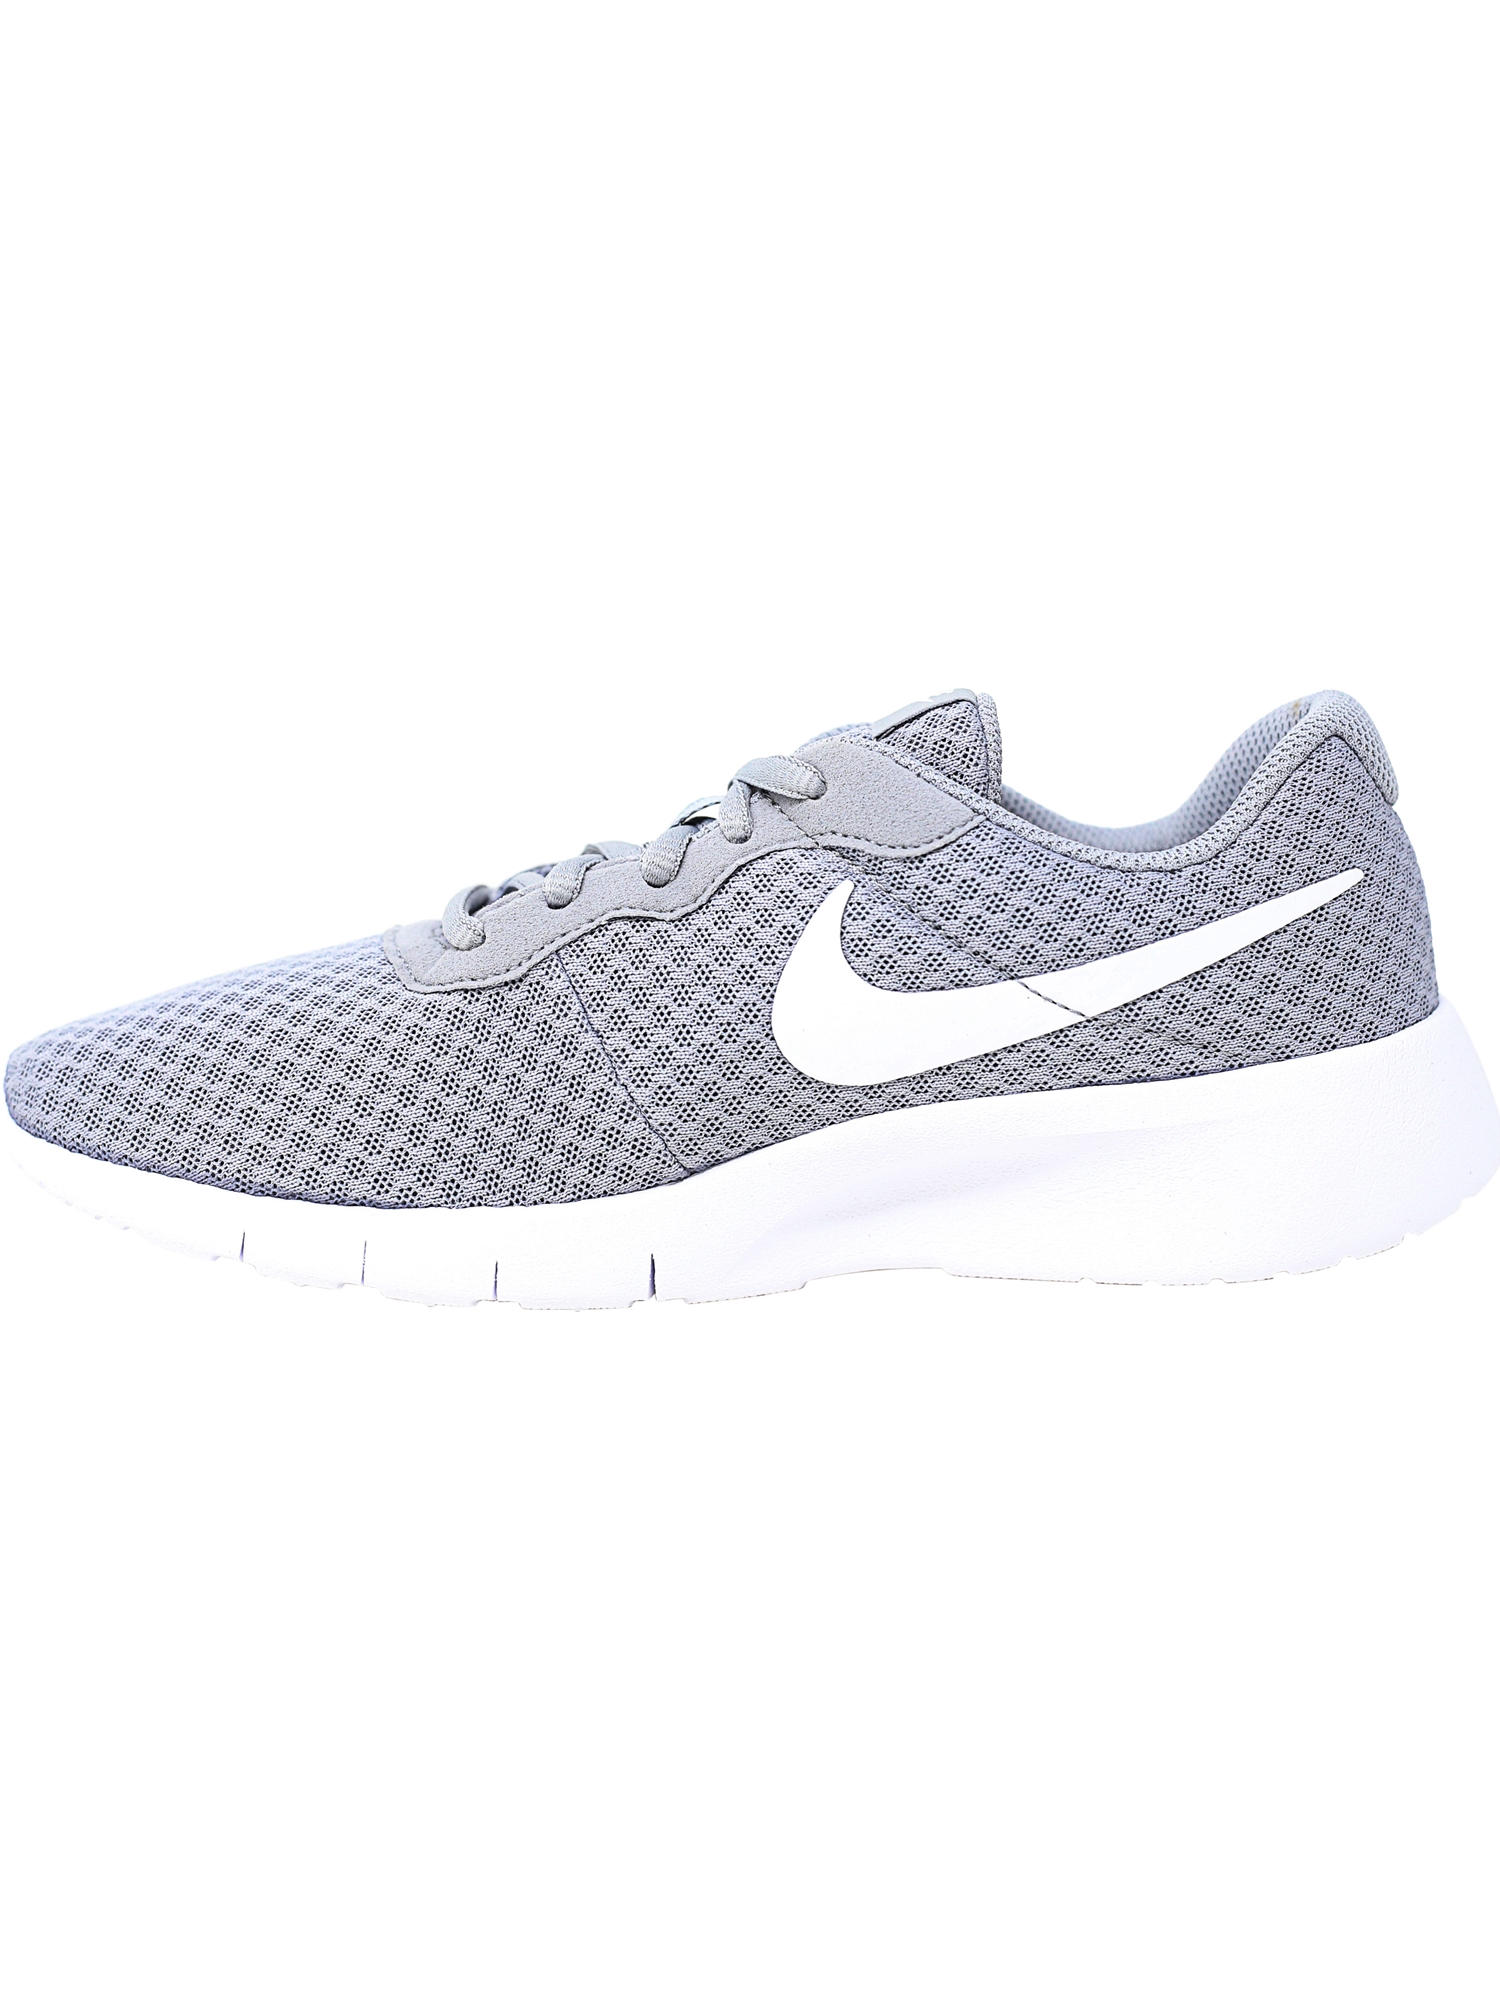 Nike Tanjun Wolf Grey / White - Ankle-High Mesh Running Shoe 7M - image 5 of 6